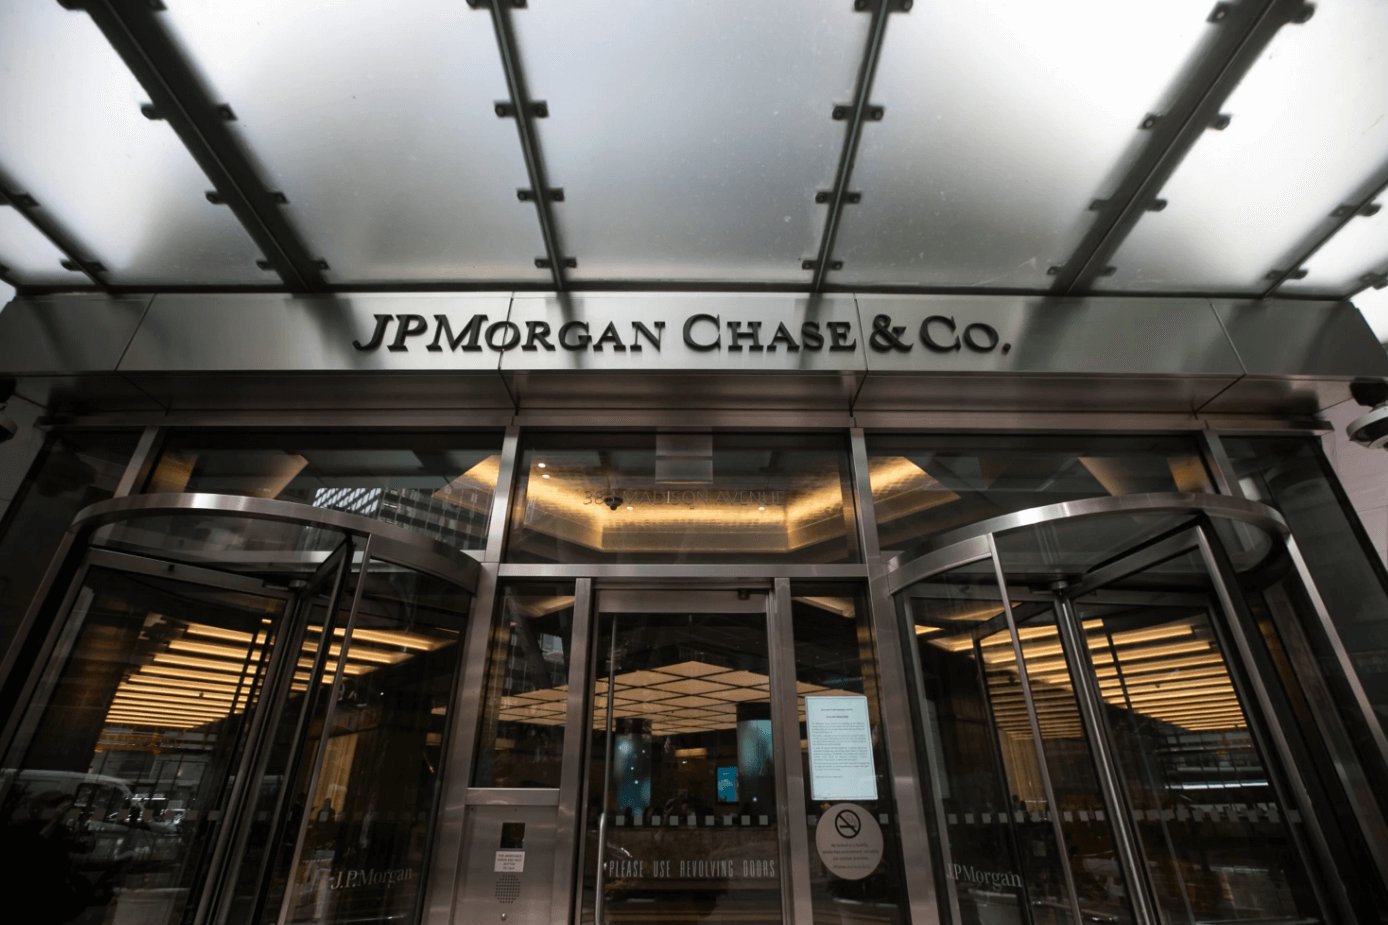 JPMorgan ถูกปรับเงินเกือบ 1.25 หมื่นล้านบาท เหตุละเลยการการซื้อขายหุ้น